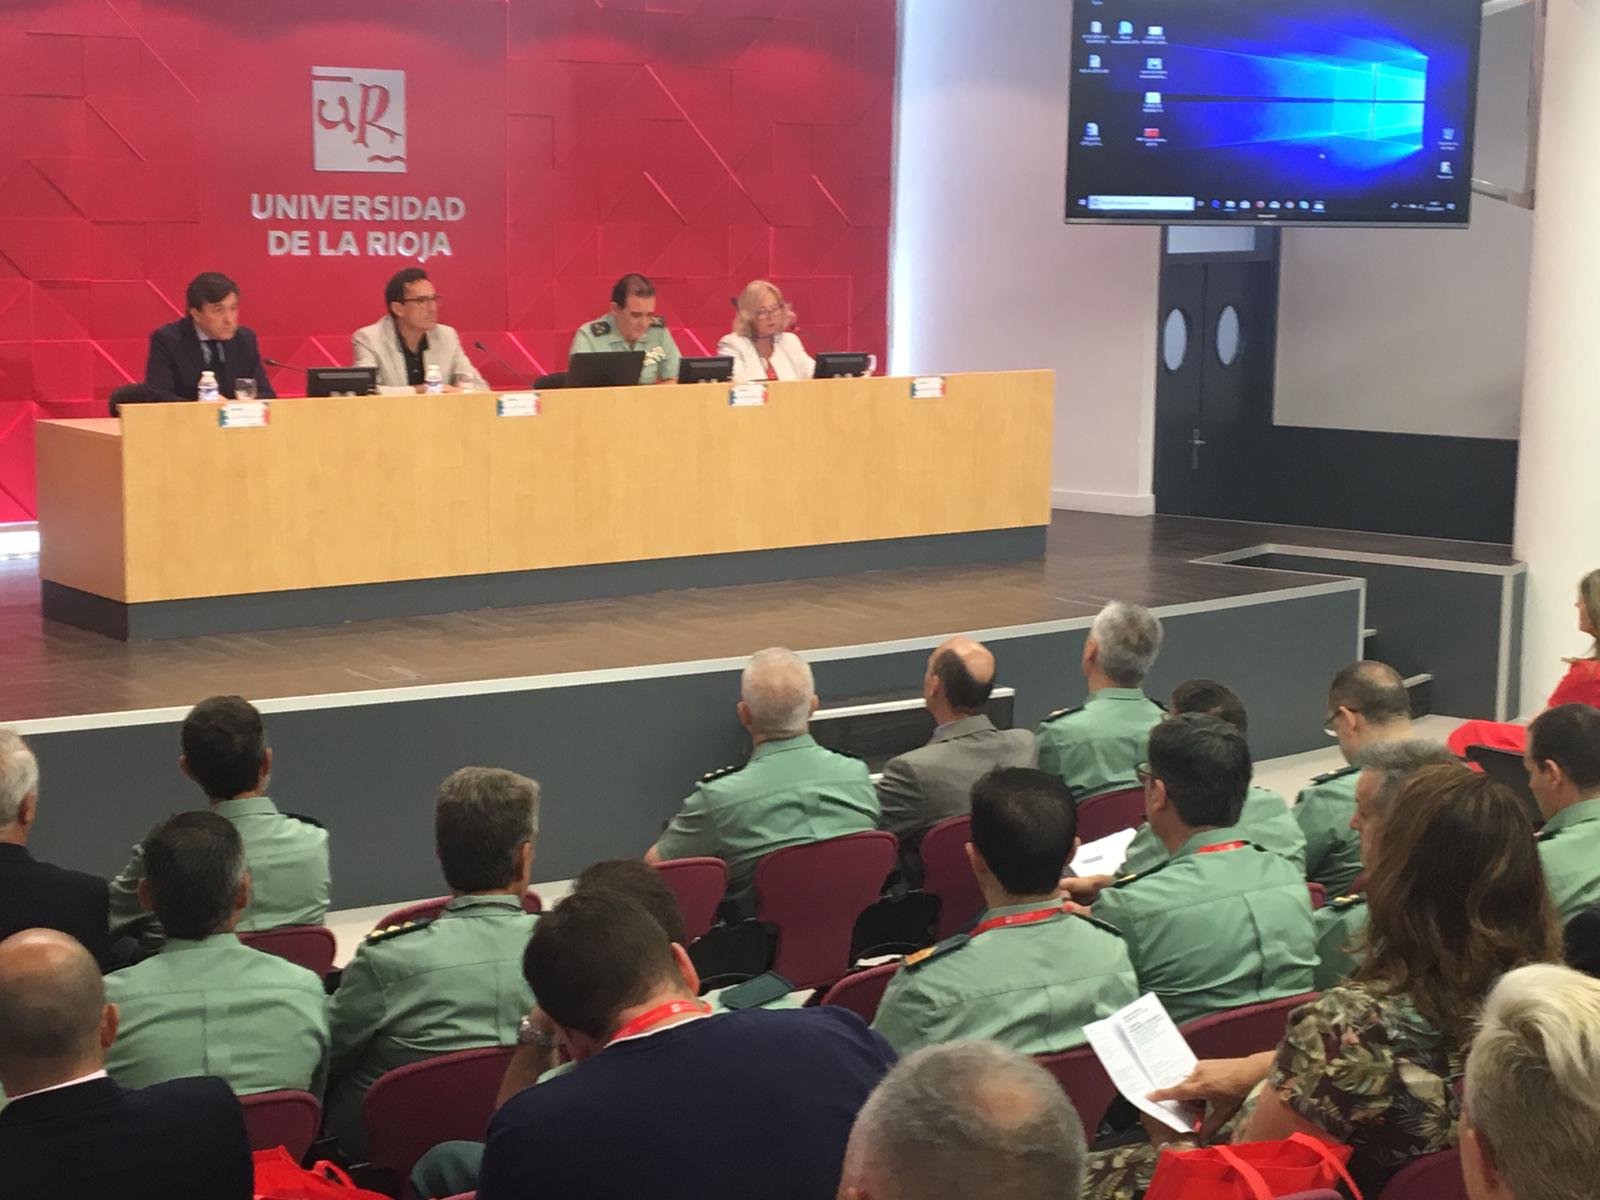 El Delegado del Gobierno participa en el V Curso de Verano sobre Inteligencia y Seguridad organizado por la Universidad de La Rioja.